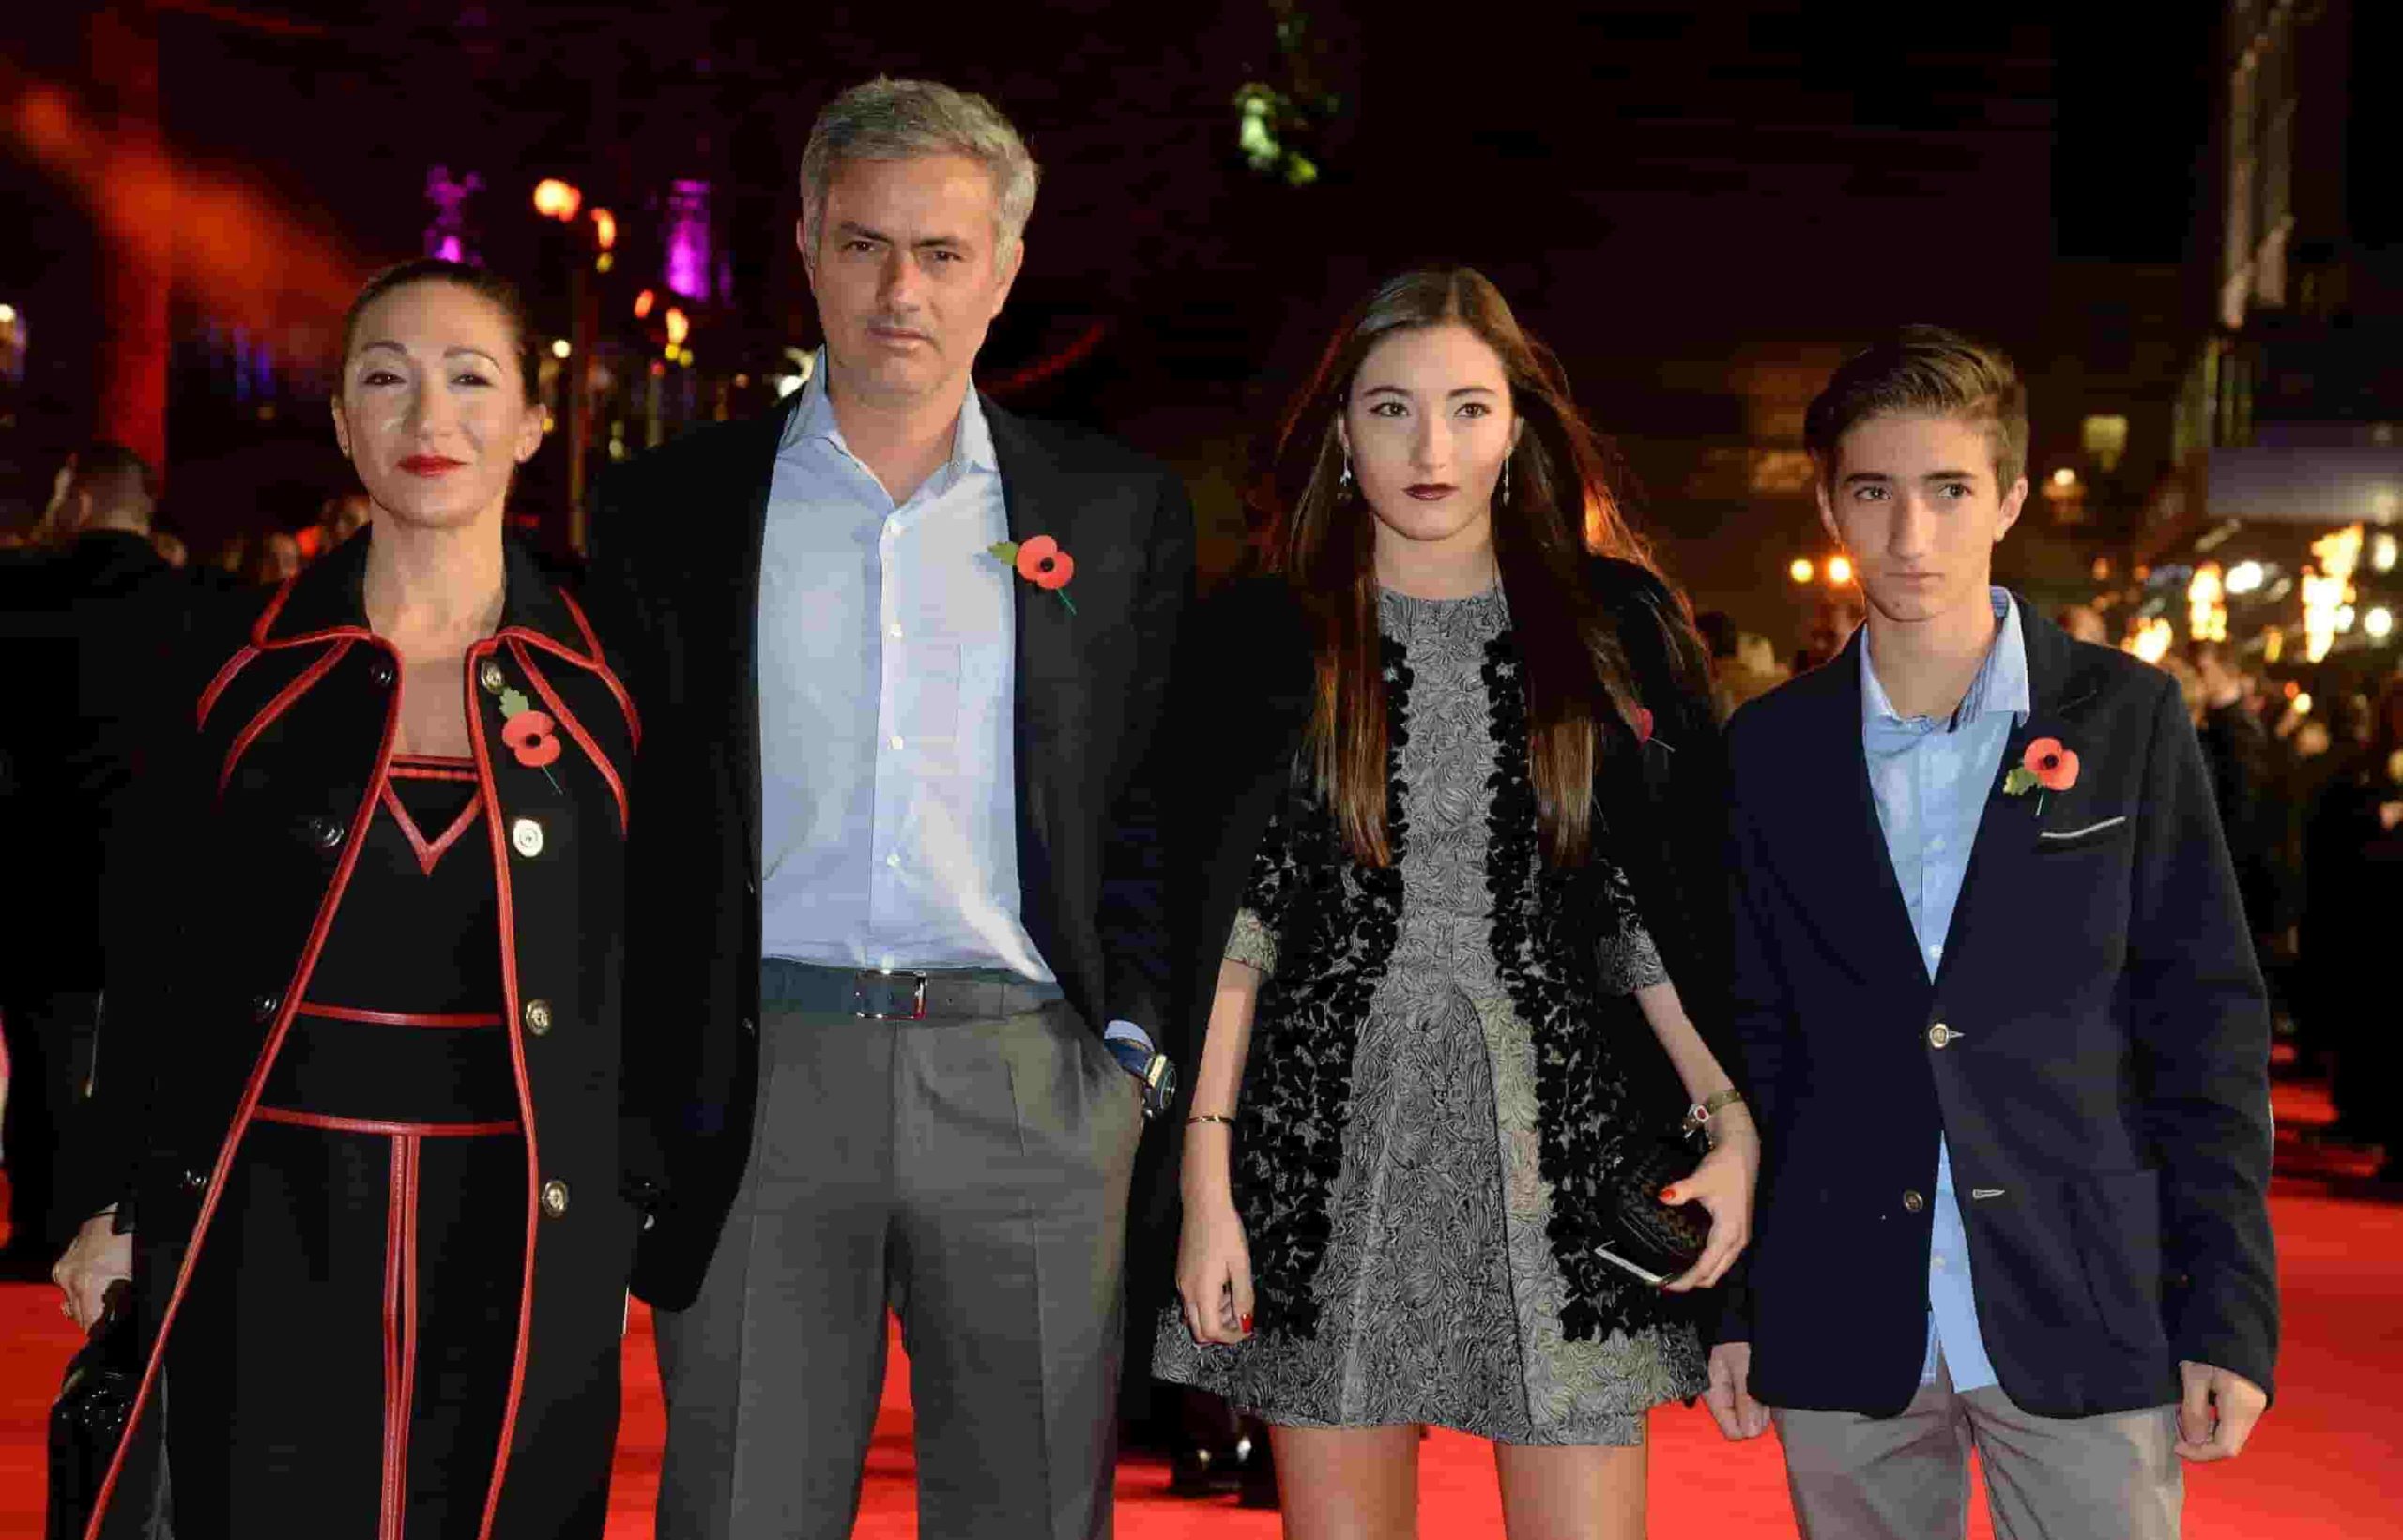 Image of José Mourinho and Matilde Faria with their kids, Matilde and Jose Mourinho, Jr.